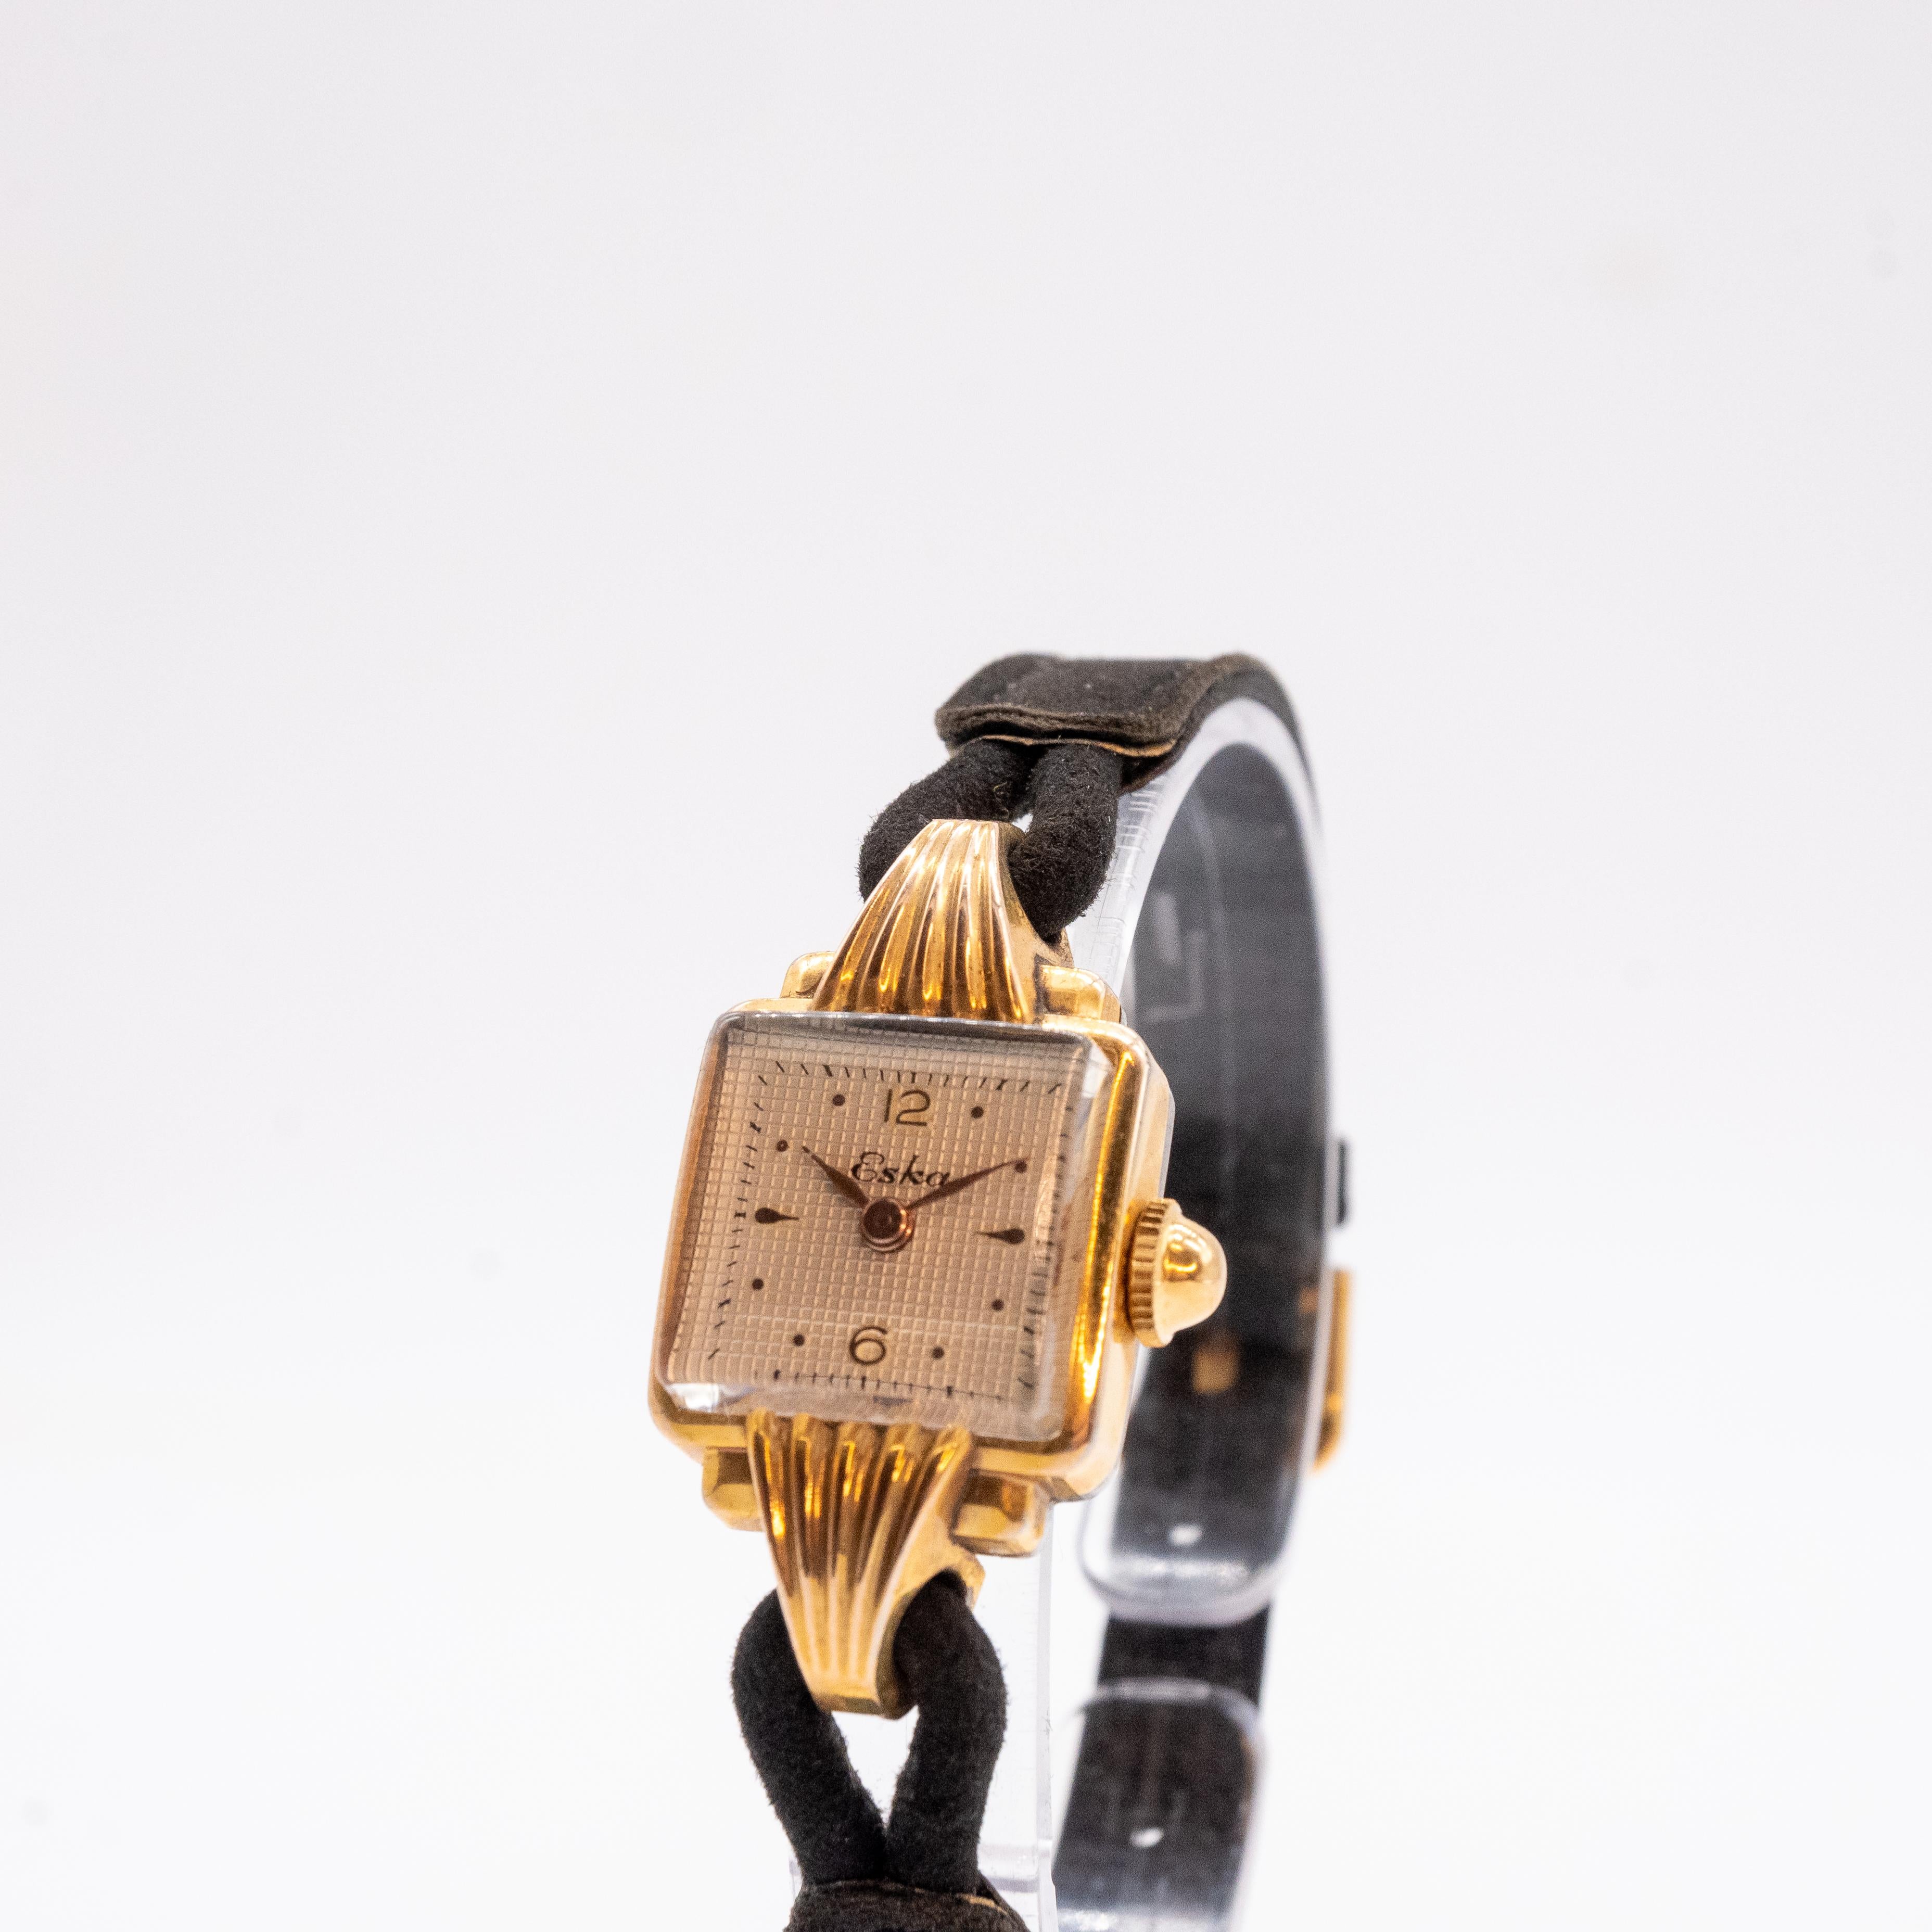 Entdecken Sie unsere Uhr Eska mit ihrem vergoldeten 20-Mikron-Gehäuse. Die gelbe Muschelverzierung auf den Bandanstößen verleiht diesem Modell einen femininen Touch. Mit ihrem quadratischen Design von 17 mm verkörpert diese Uhr Raffinesse in all